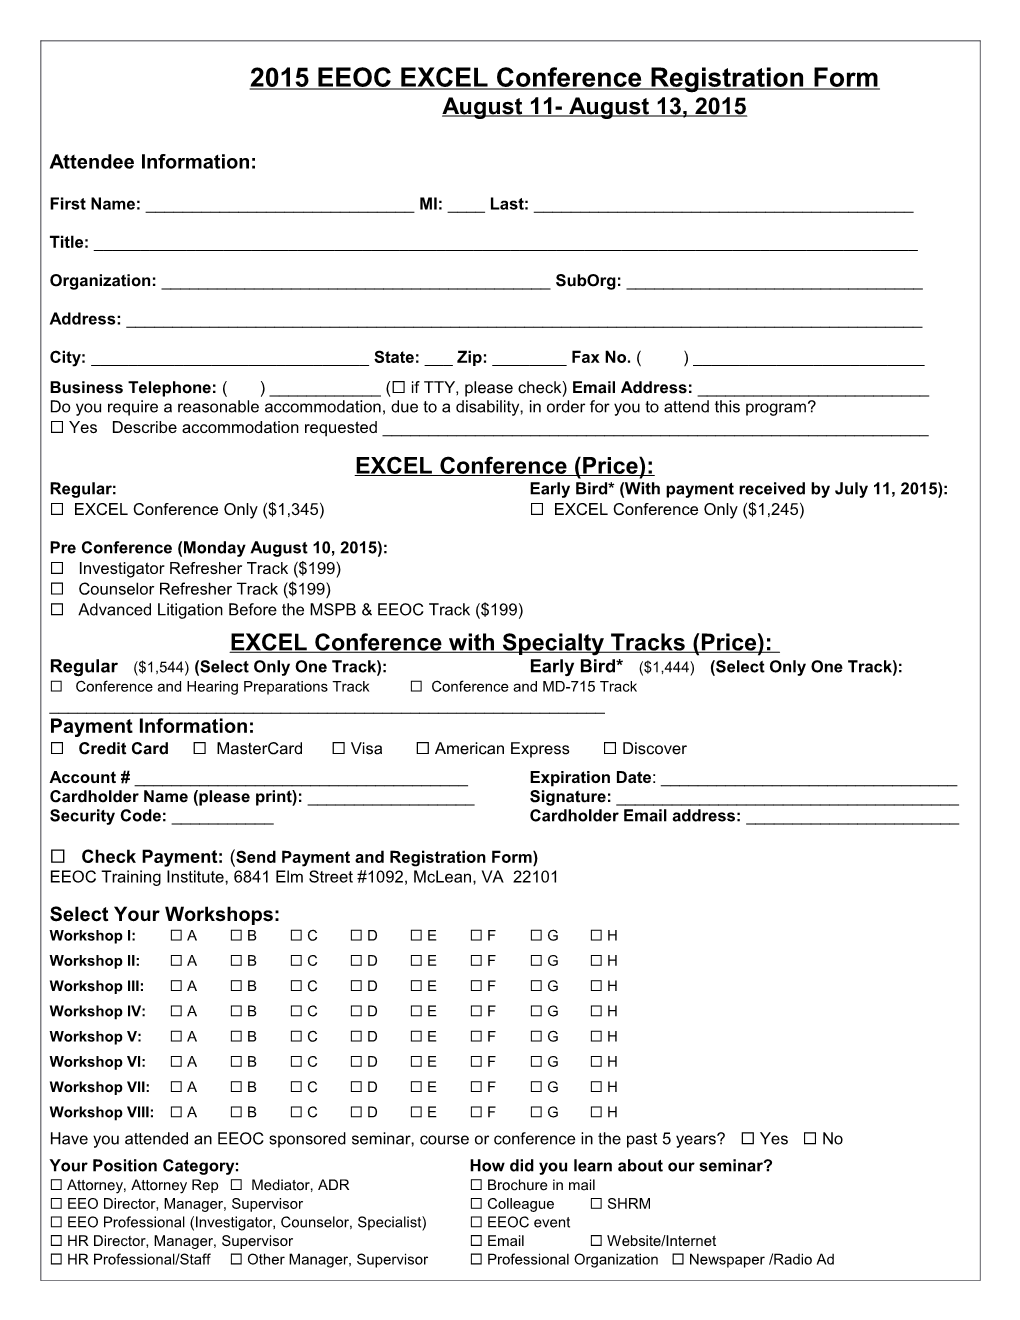 2006 Eeoc Training Institute Taps Registration Form